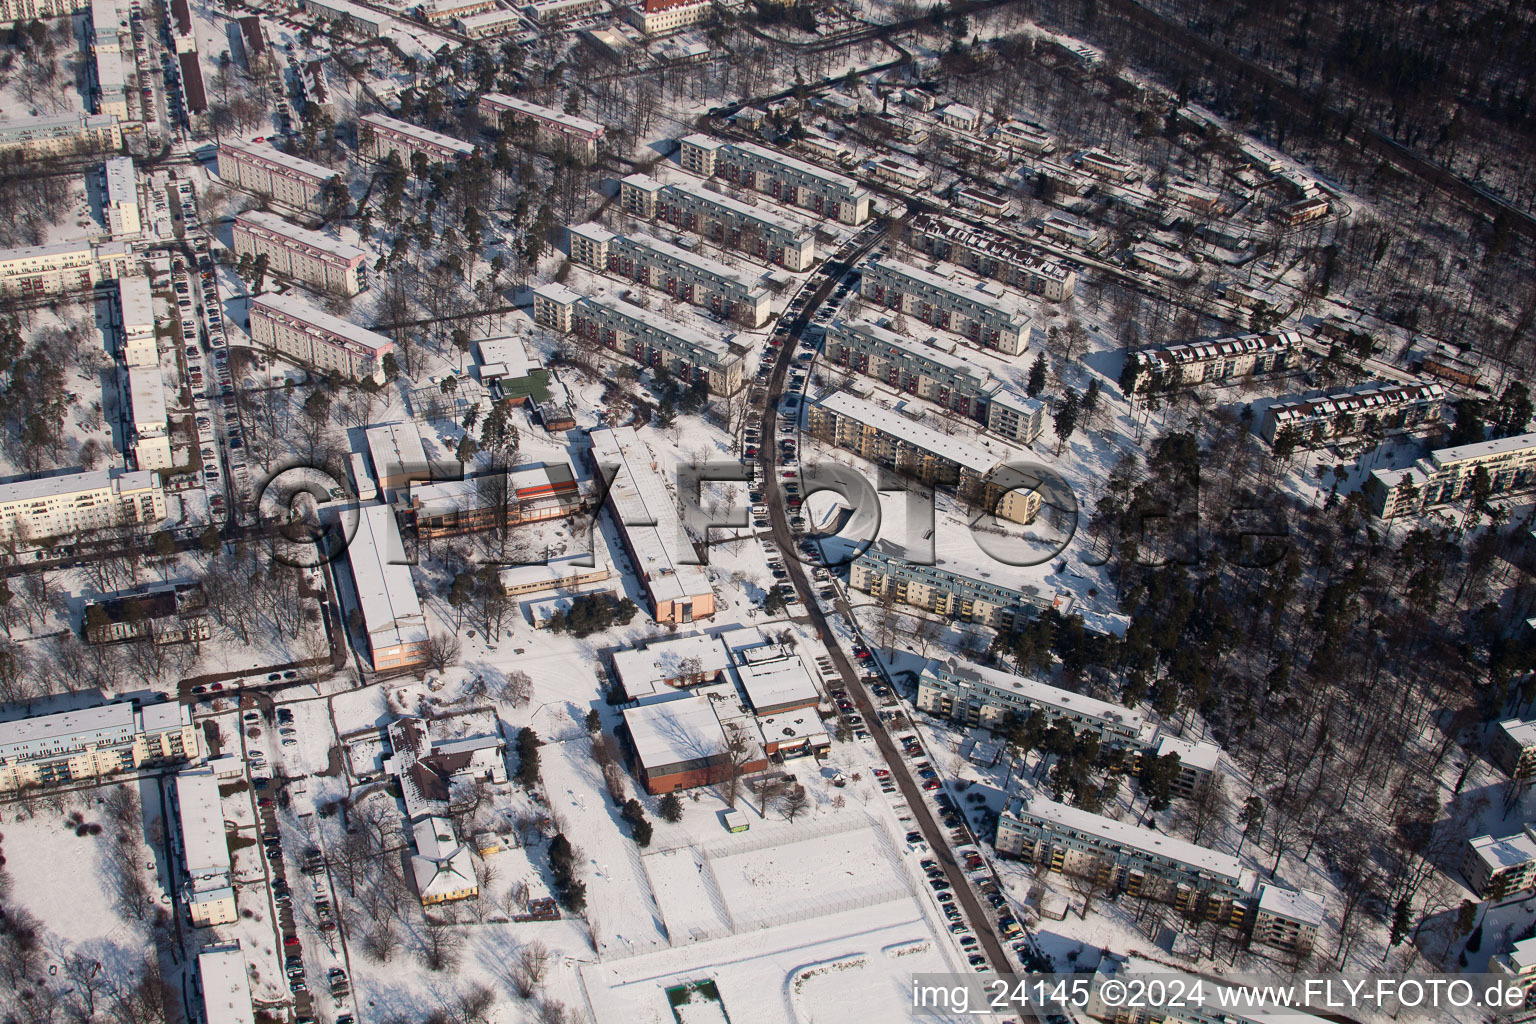 Luftbild von Tennesseeallee im Winter bei Schnee im Ortsteil Nordstadt in Karlsruhe im Bundesland Baden-Württemberg, Deutschland